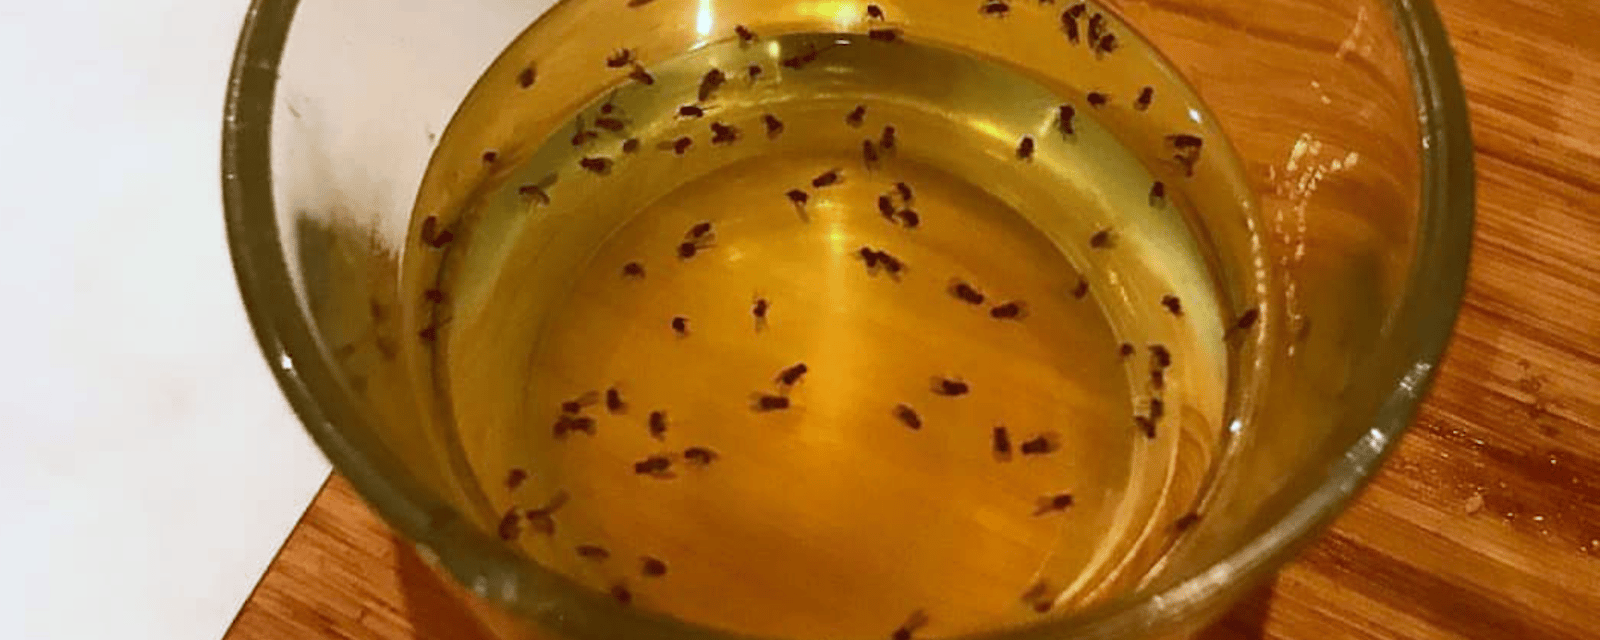 Un piège facile et efficace pour les mouches à fruits